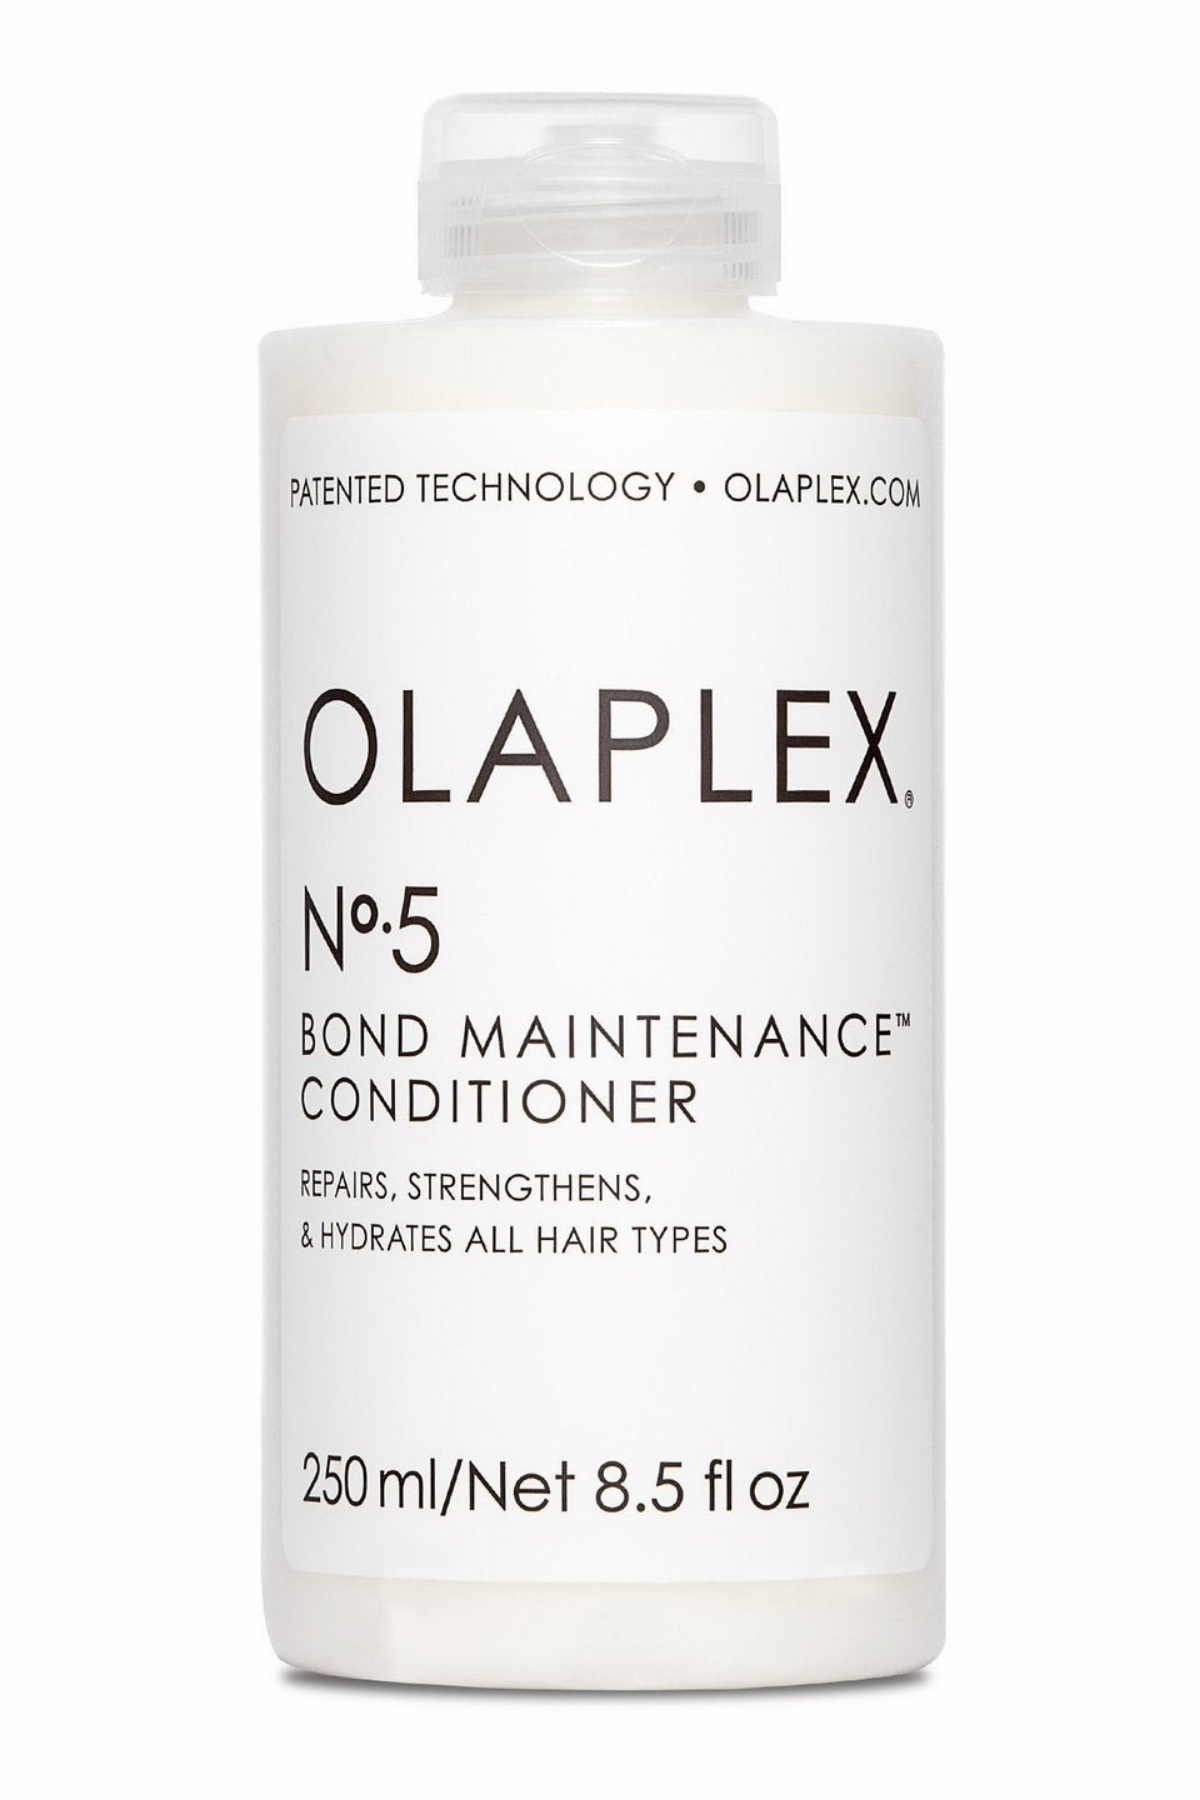 Olaplex #5 Bond Maintenance Conditioner